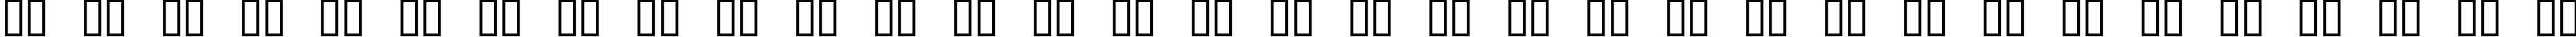 Пример написания русского алфавита шрифтом Ventilate